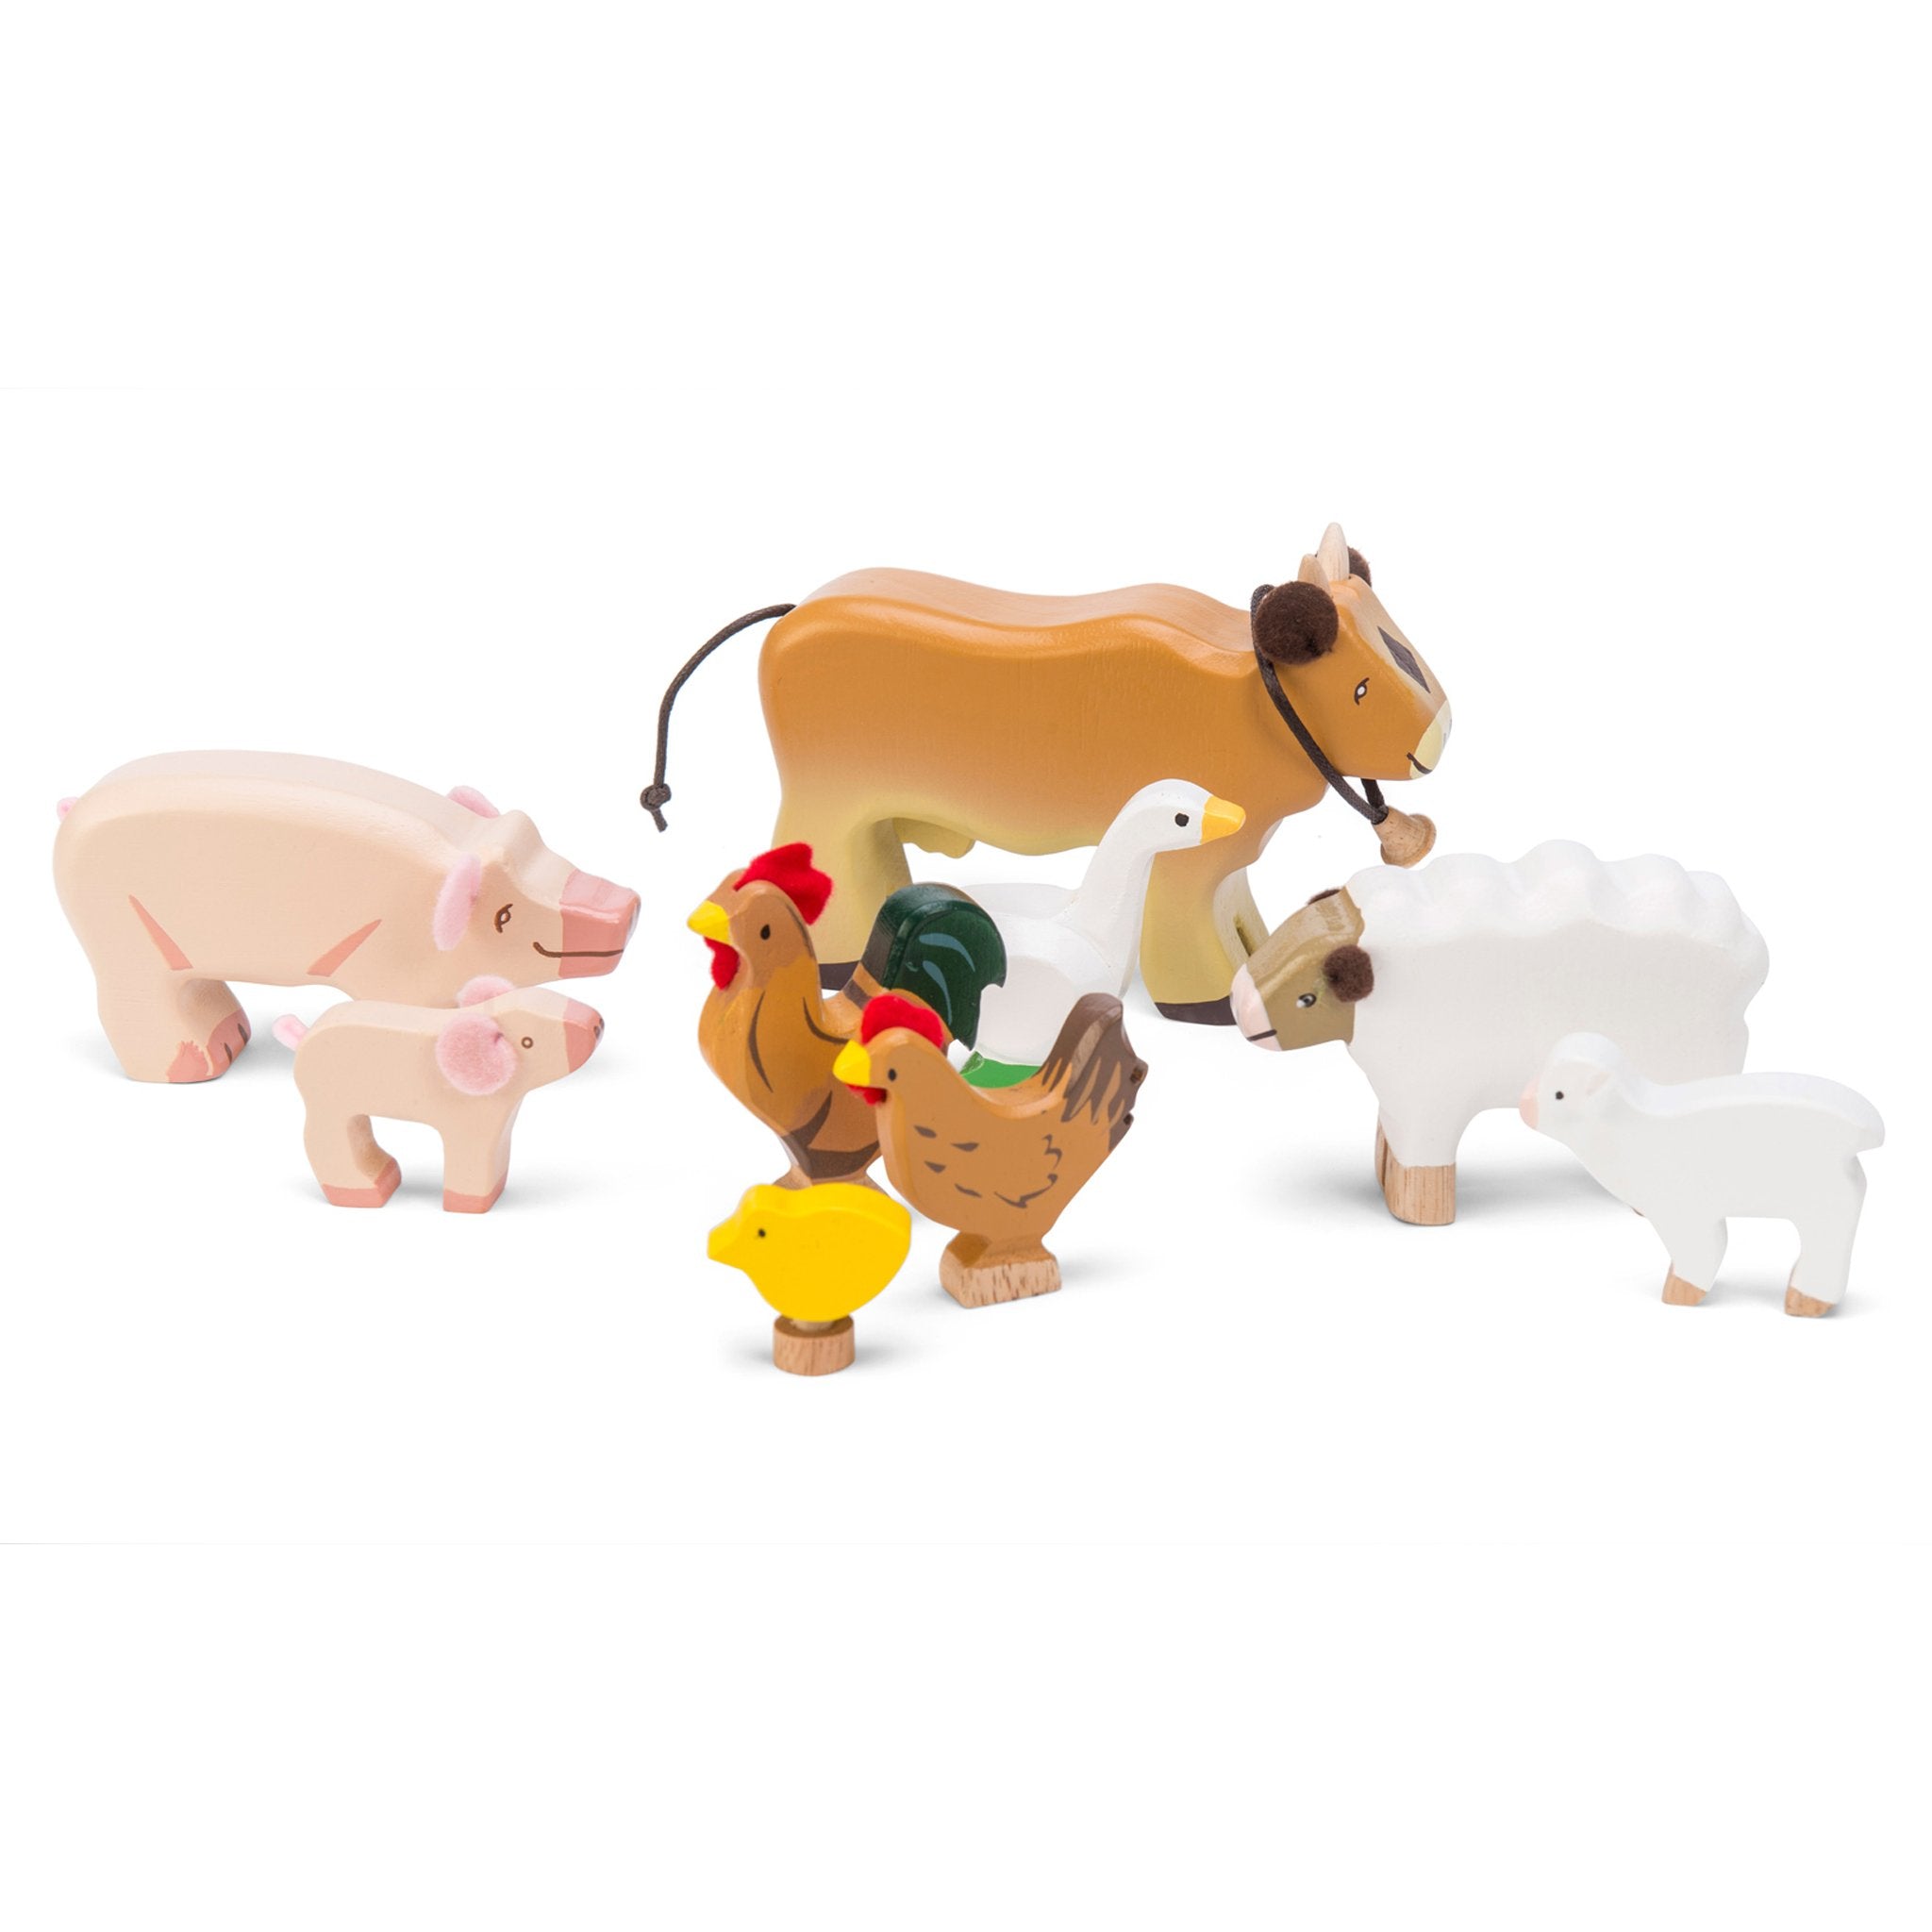 Le Toy Van Wooden Farm Animals